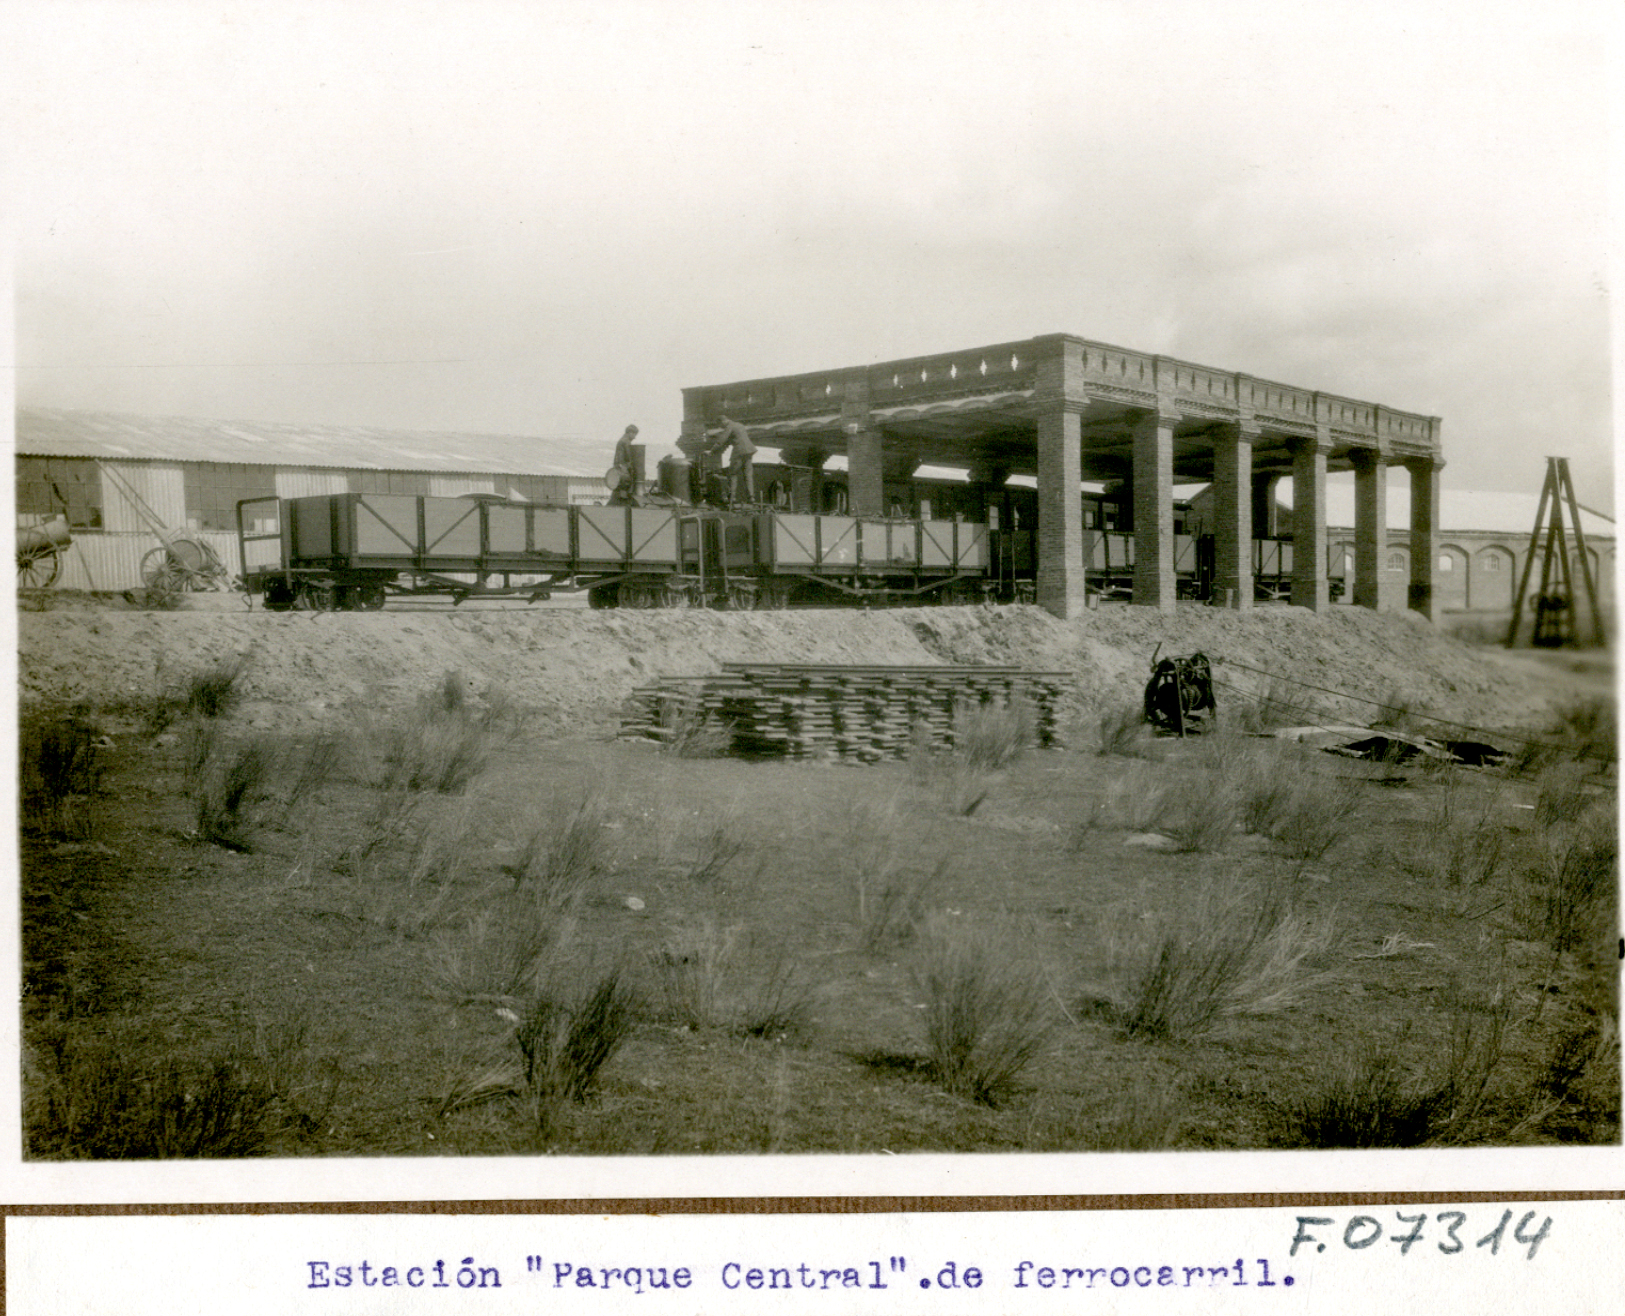 Estación parque central de ferrocarril. Demostración experimental por el cuerpo de ingenieros con la presencia de Alfonso XIII. 1922-1923, Madrid